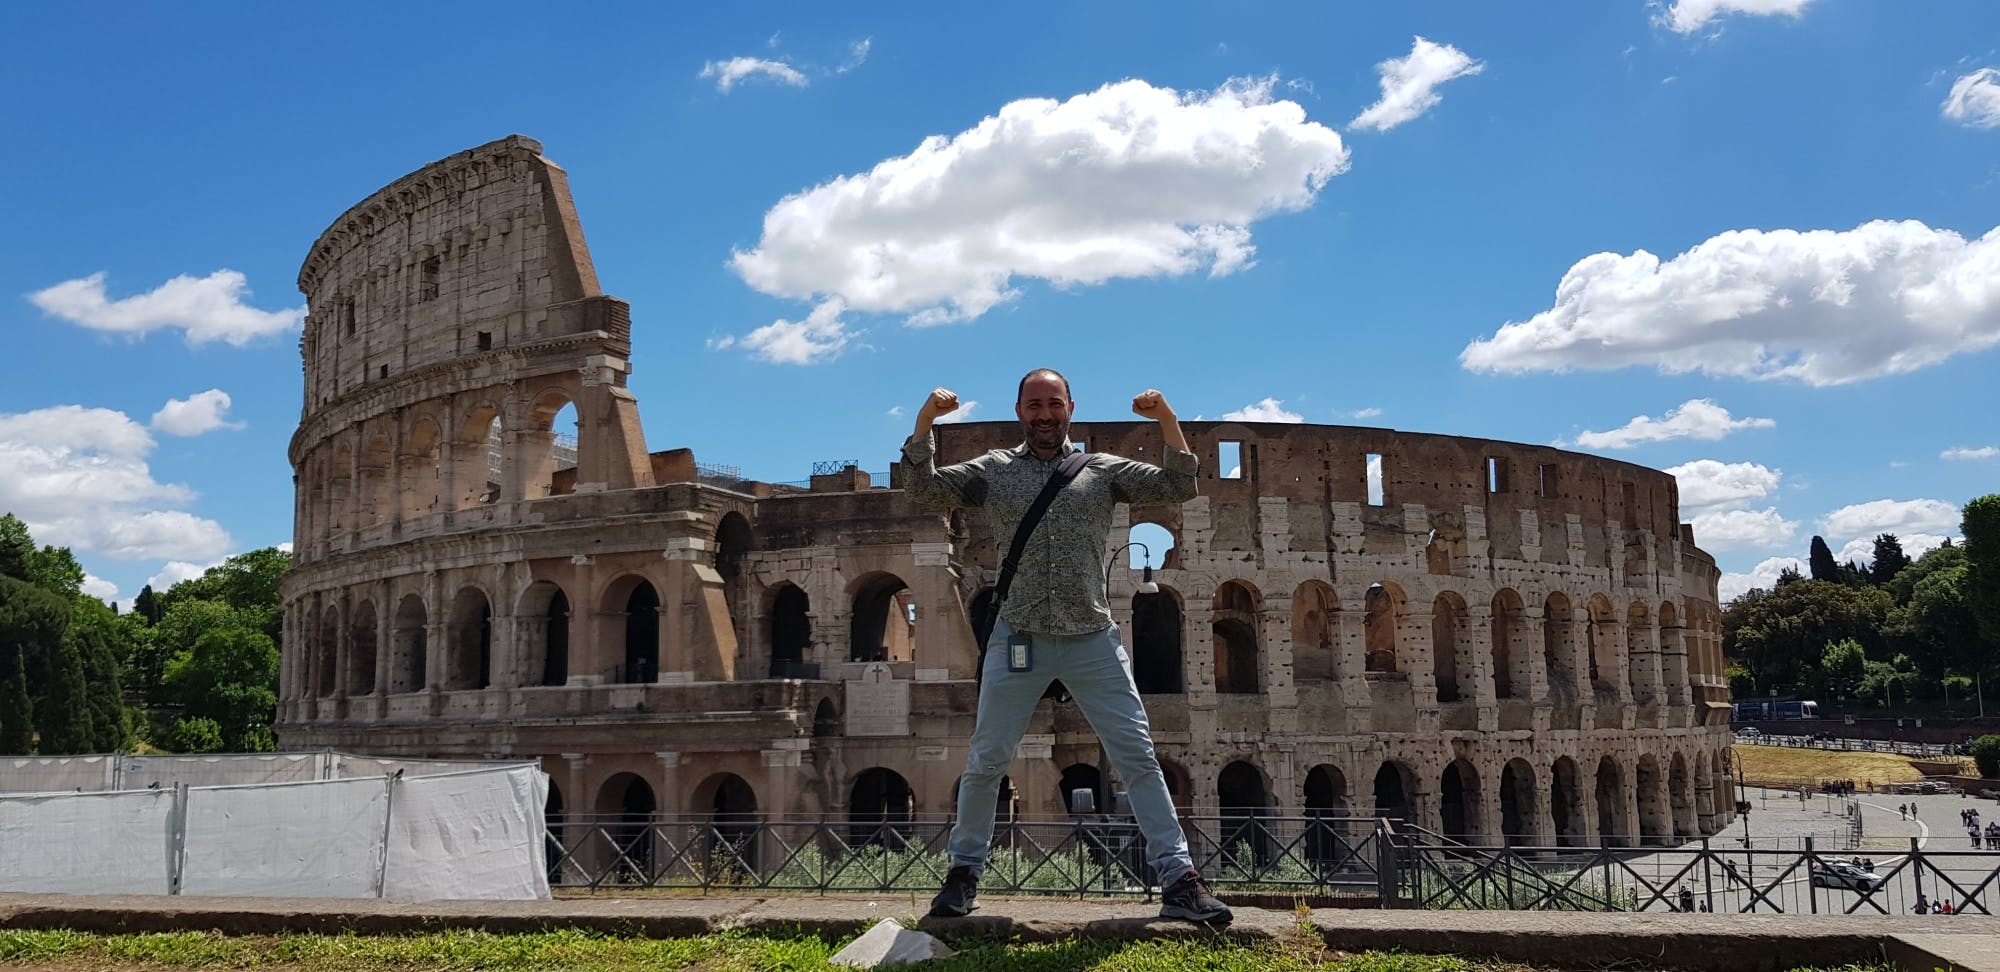 Excursão autêntica para grupos pequenos no Coliseu e no Fórum Romano